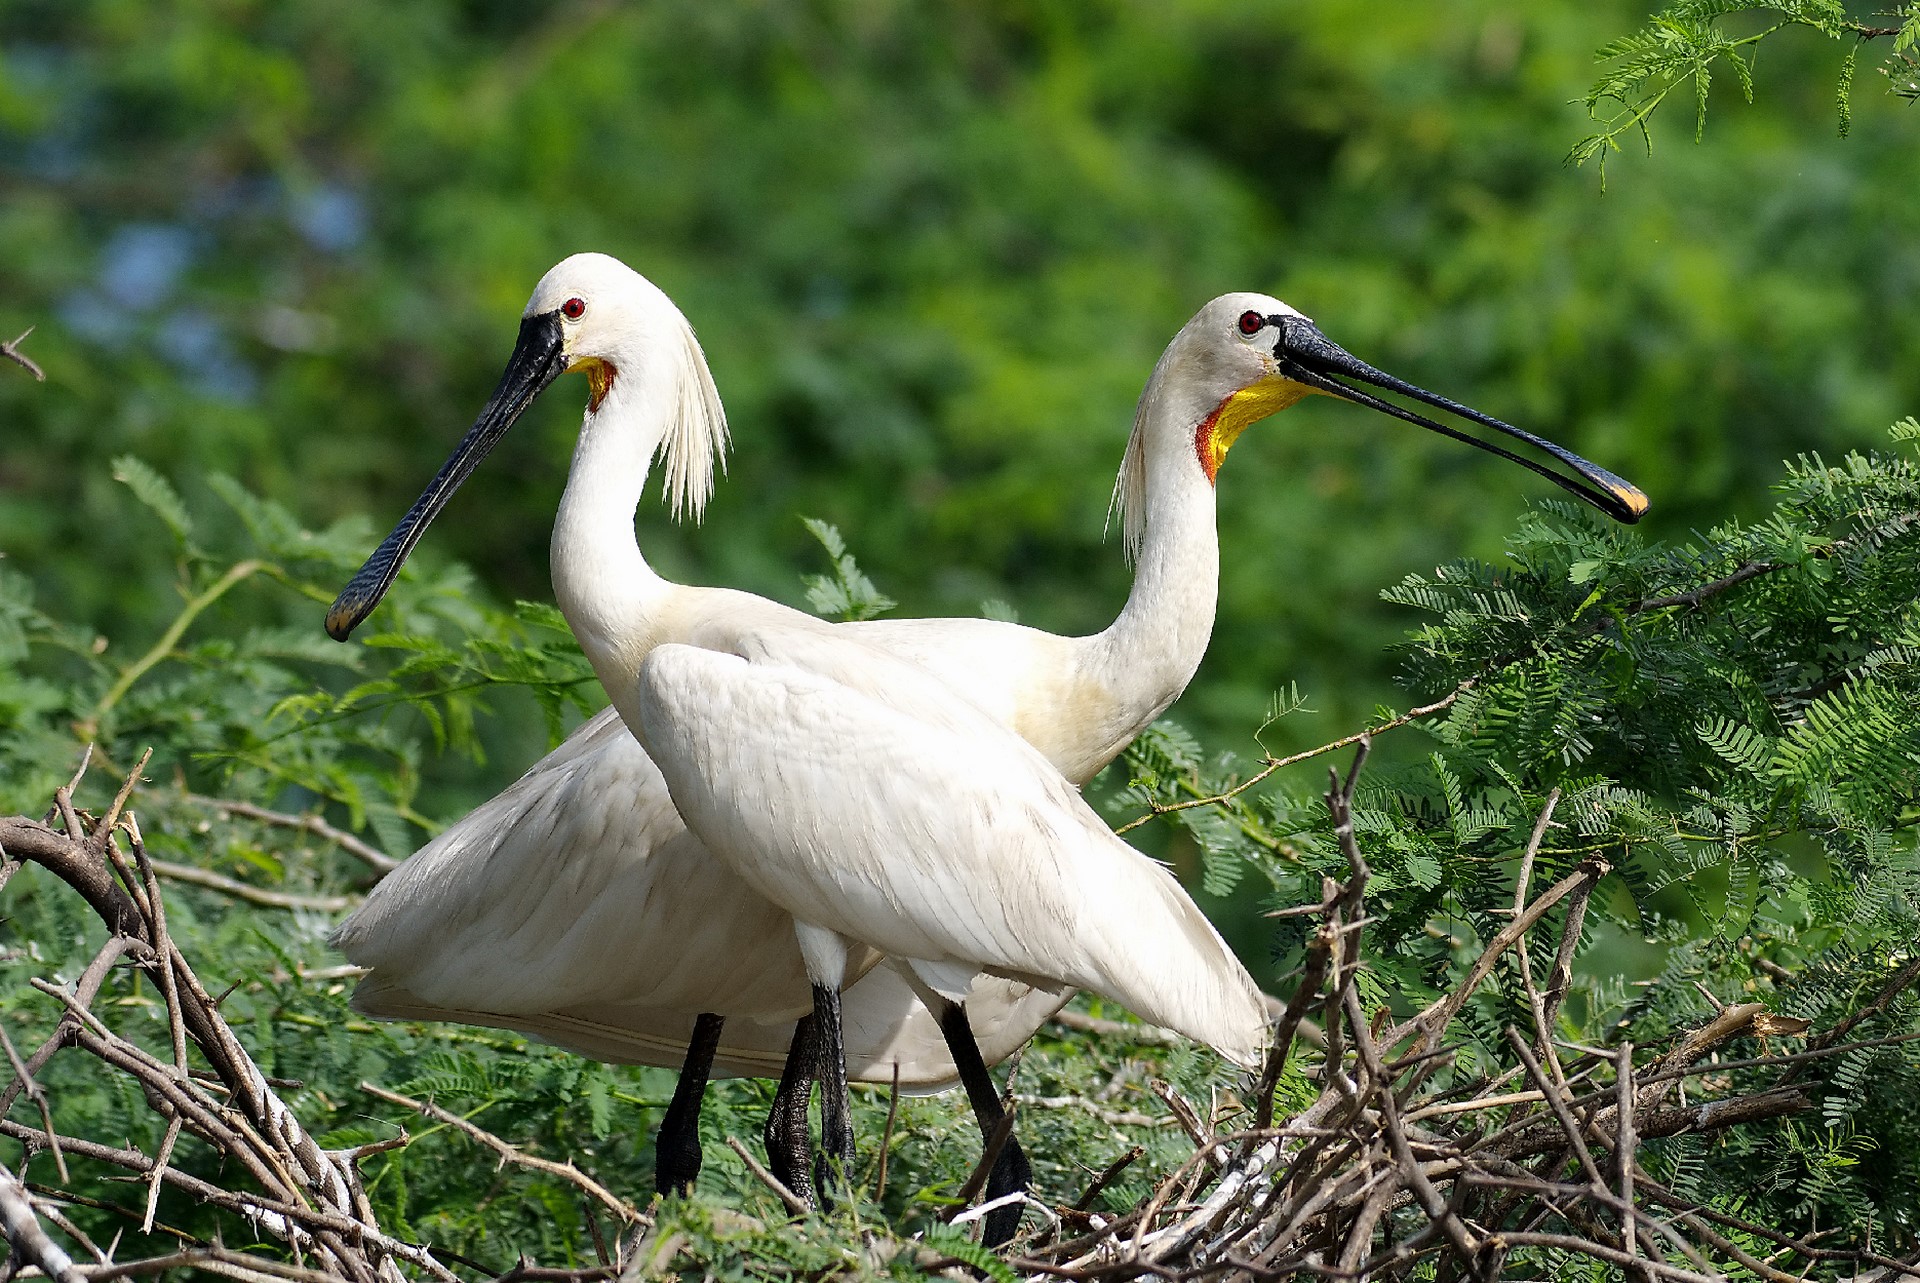 Soor Sarovar Bird Sanctuary